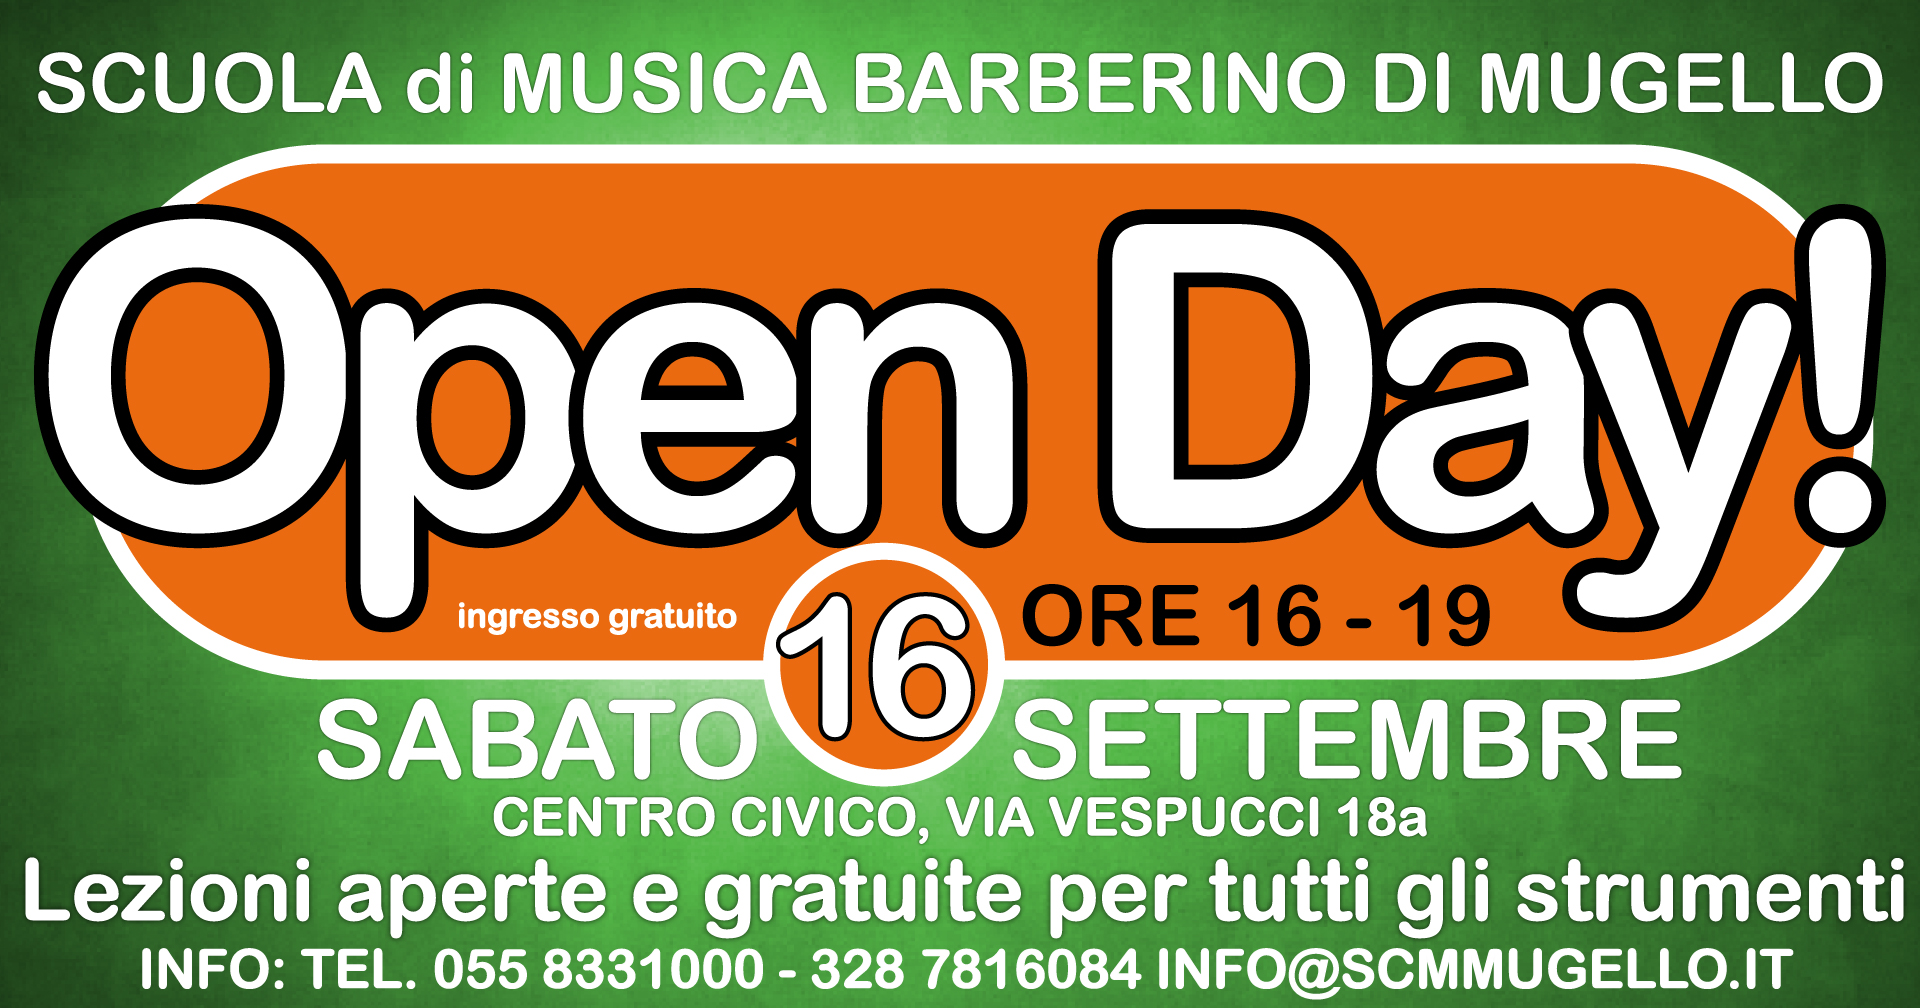 Open Day Barberino di Mugello Sabato 16 Settembre 2017 ore 16-19